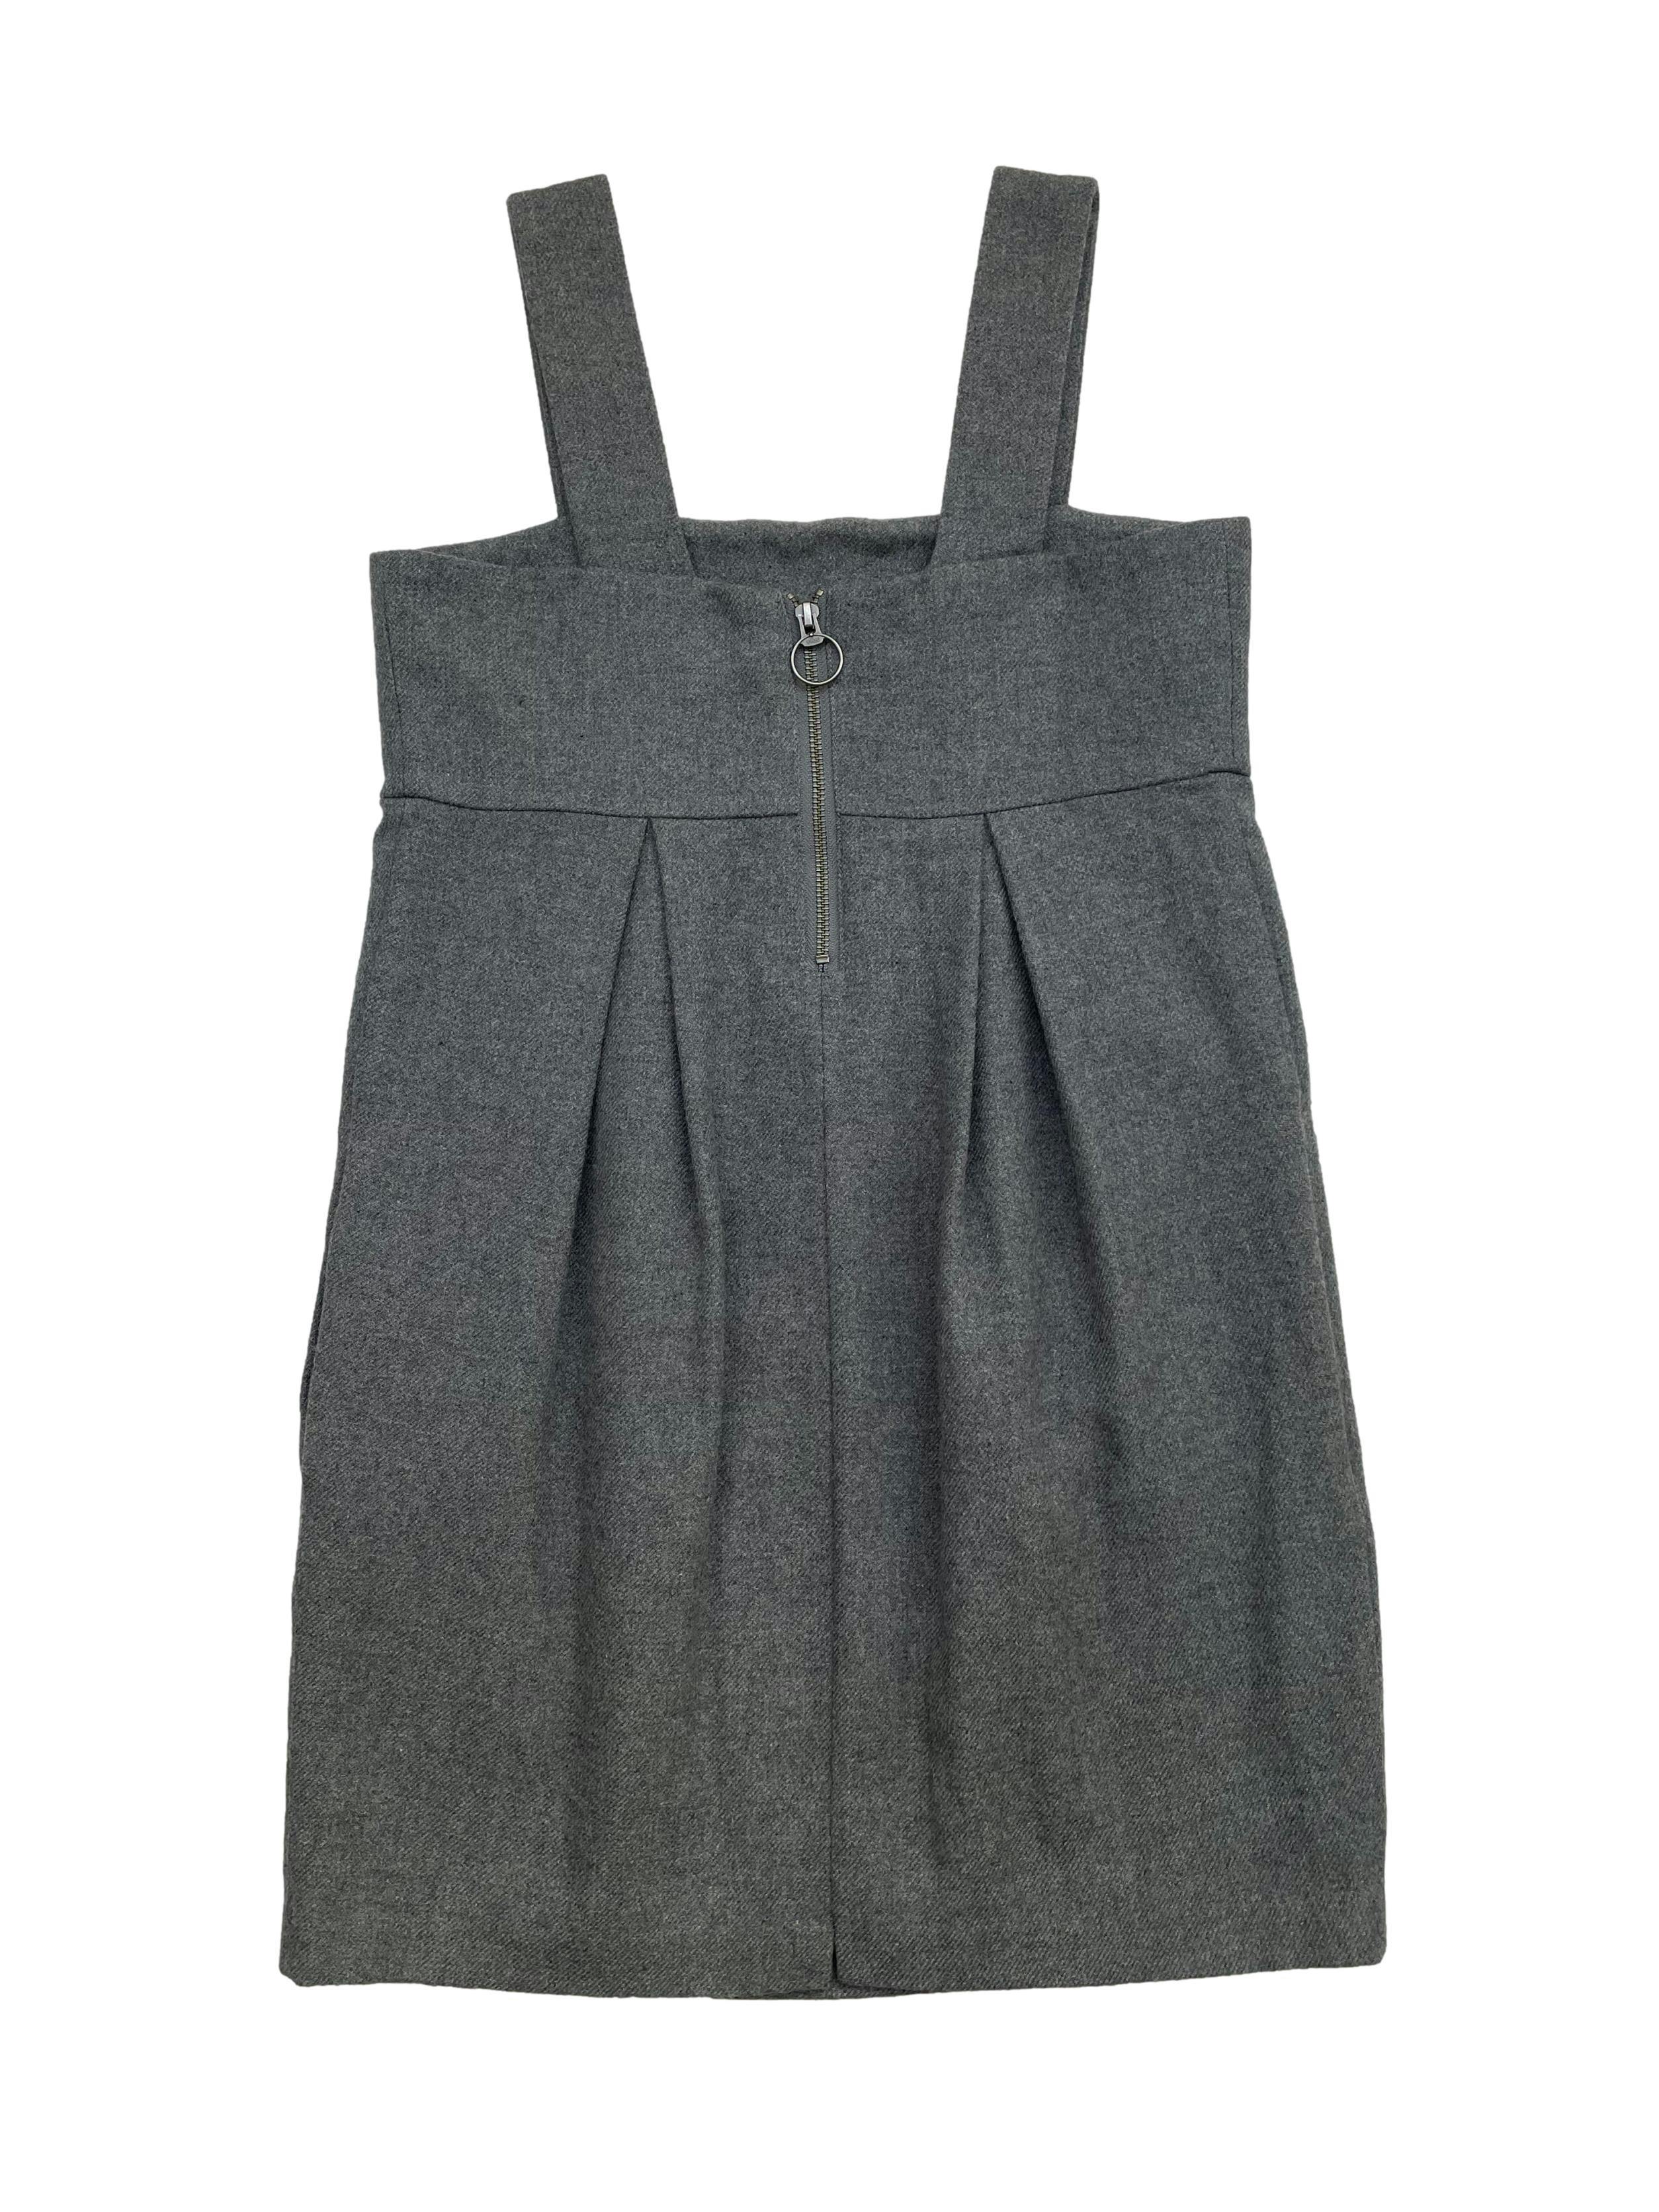 Vestido H&M gris oscuro de lanilla 60% lana. Con forro, bolsillos laterales y cierre metálico posterior. Busto 84cm, Largo 83cm.